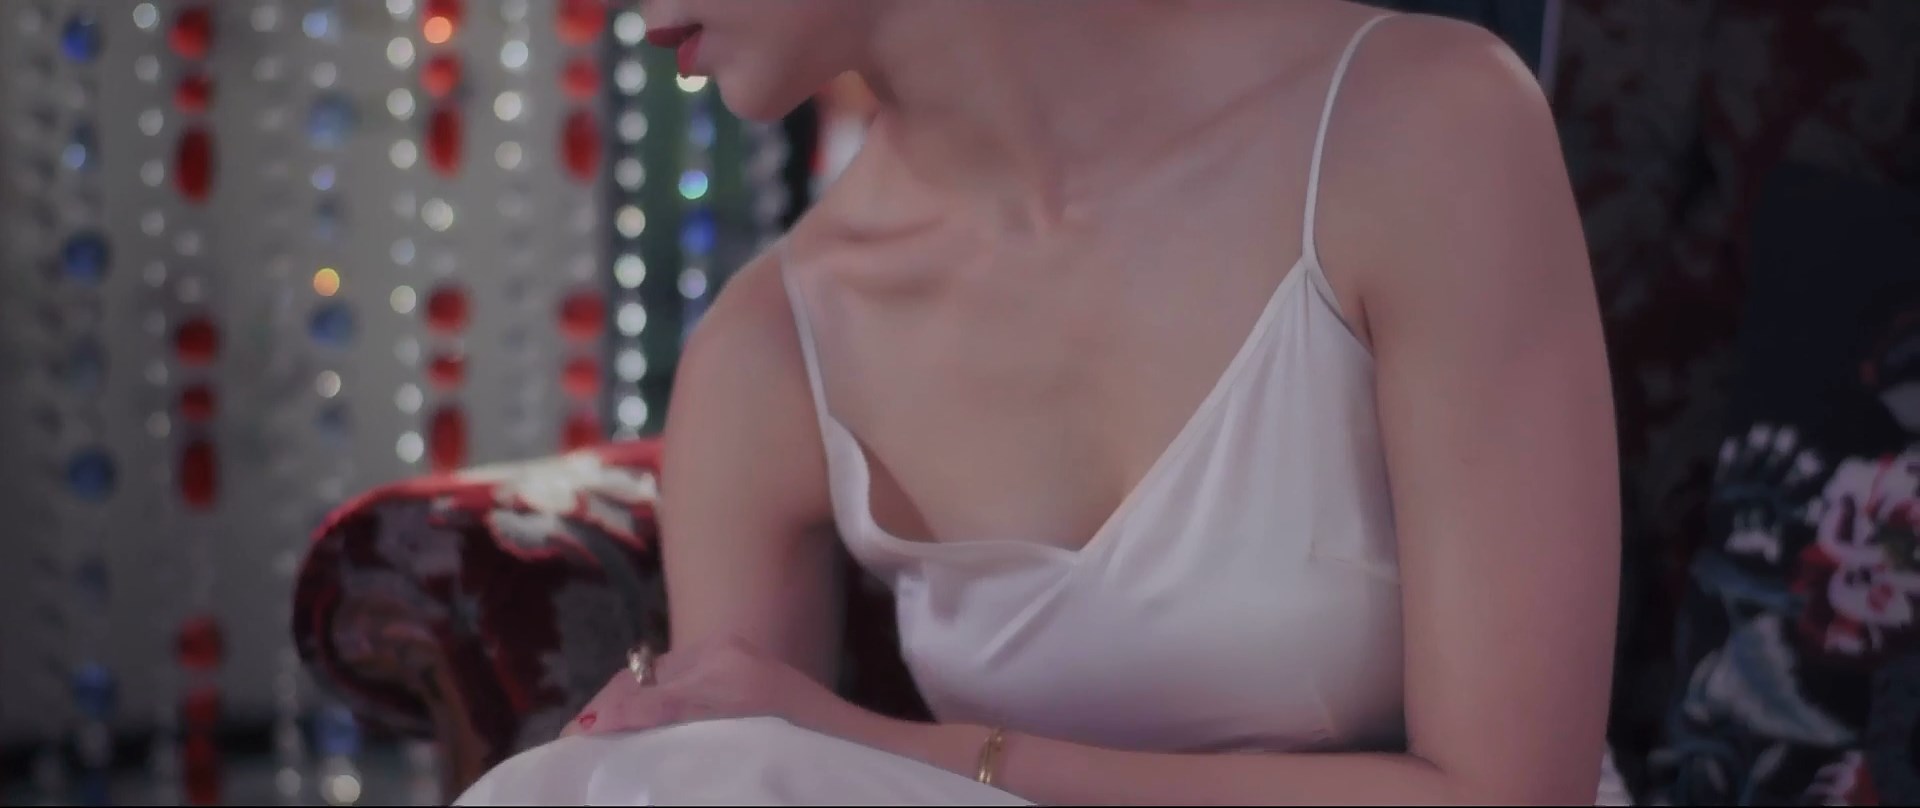 Peh Sex Movies - Watch Online - Joanne Peh - Last Madame s01 (2019) HD 1080p